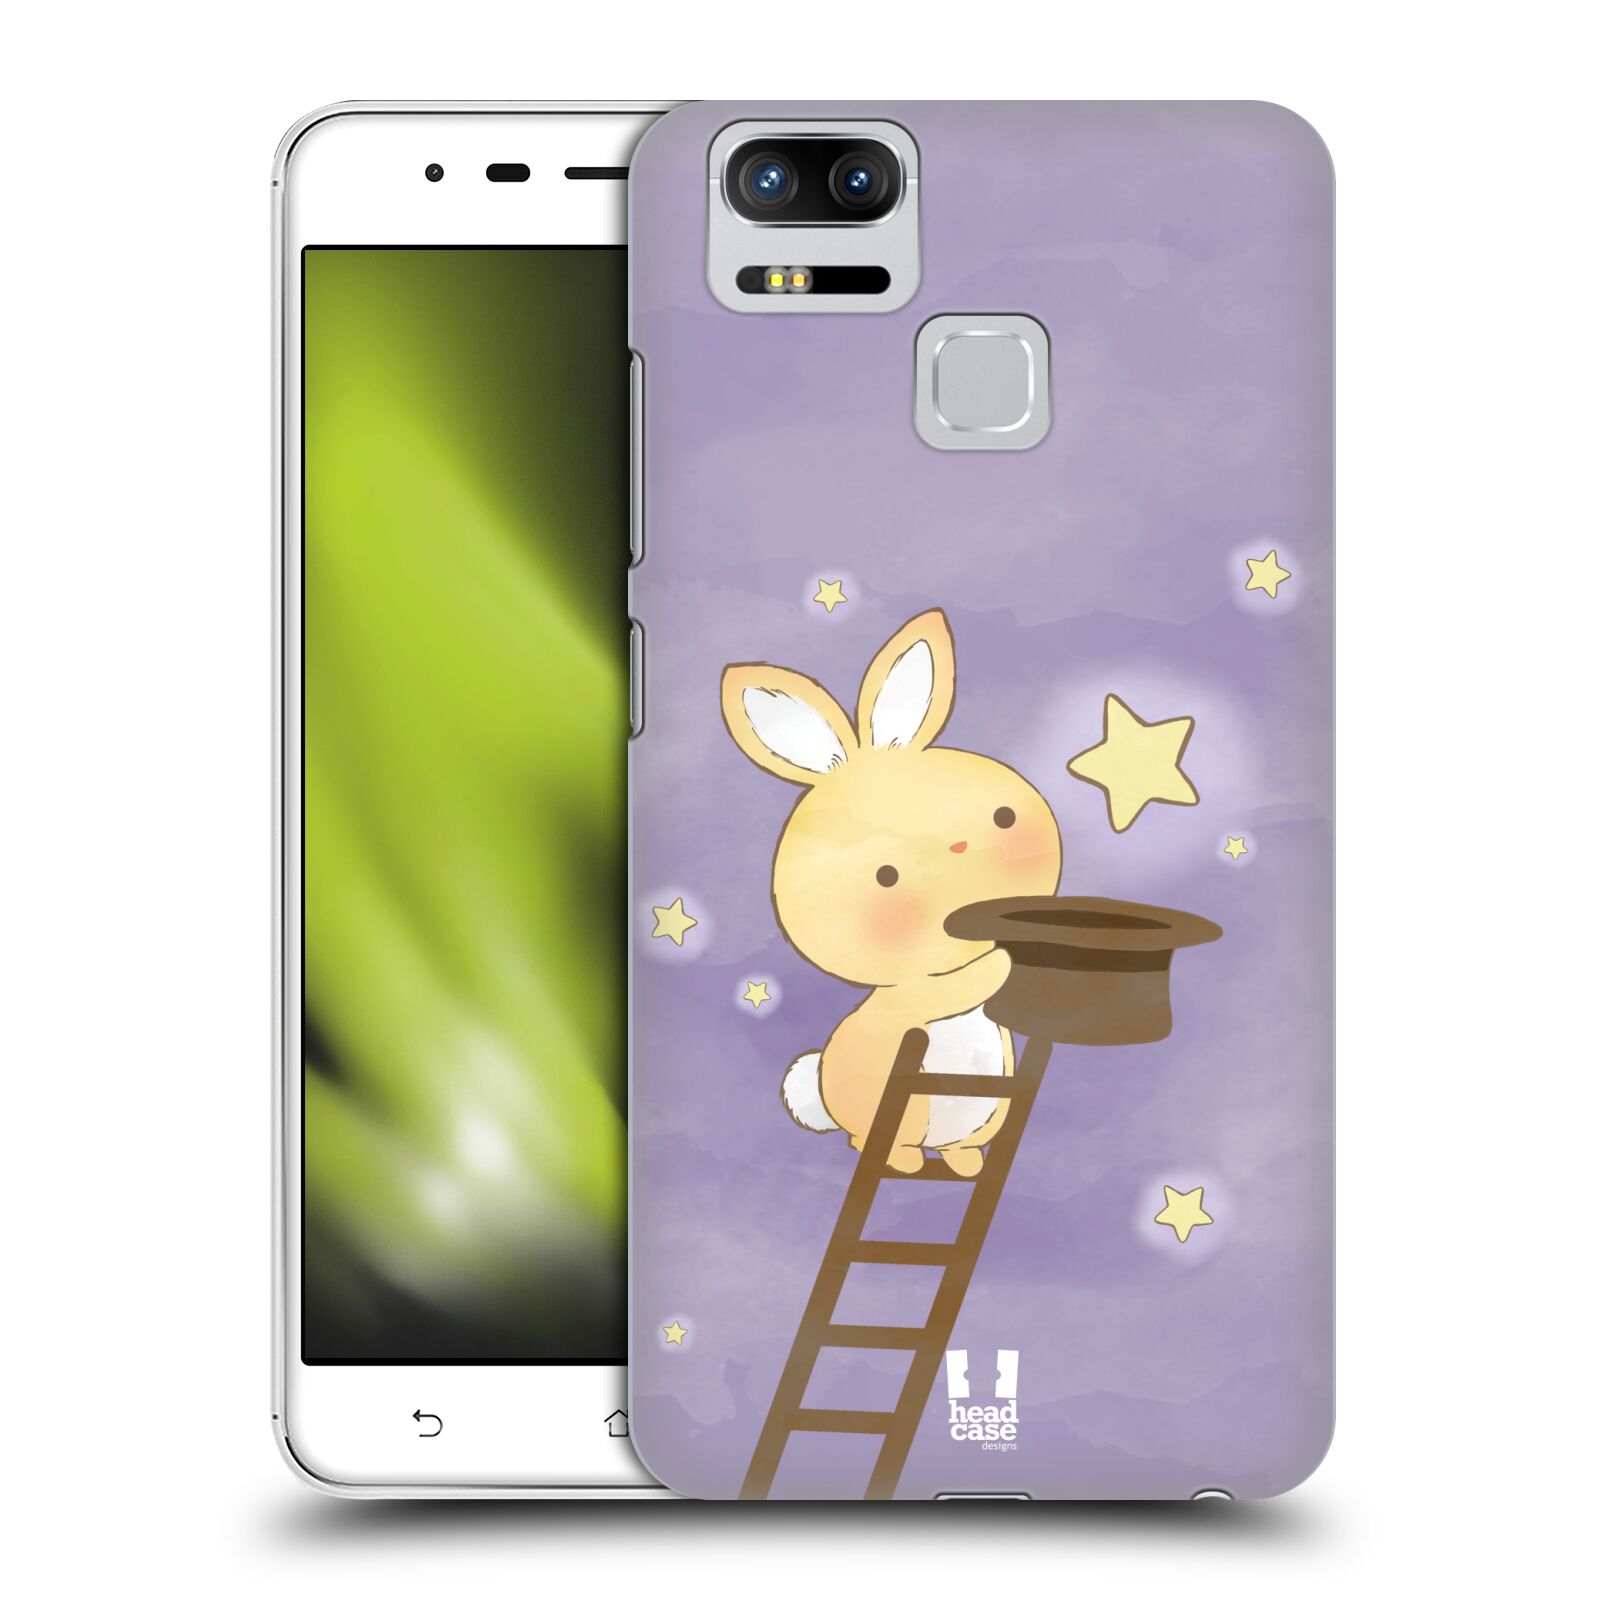 HEAD CASE plastový obal na mobil Asus Zenfone 3 Zoom ZE553KL vzor králíček a hvězdy fialová